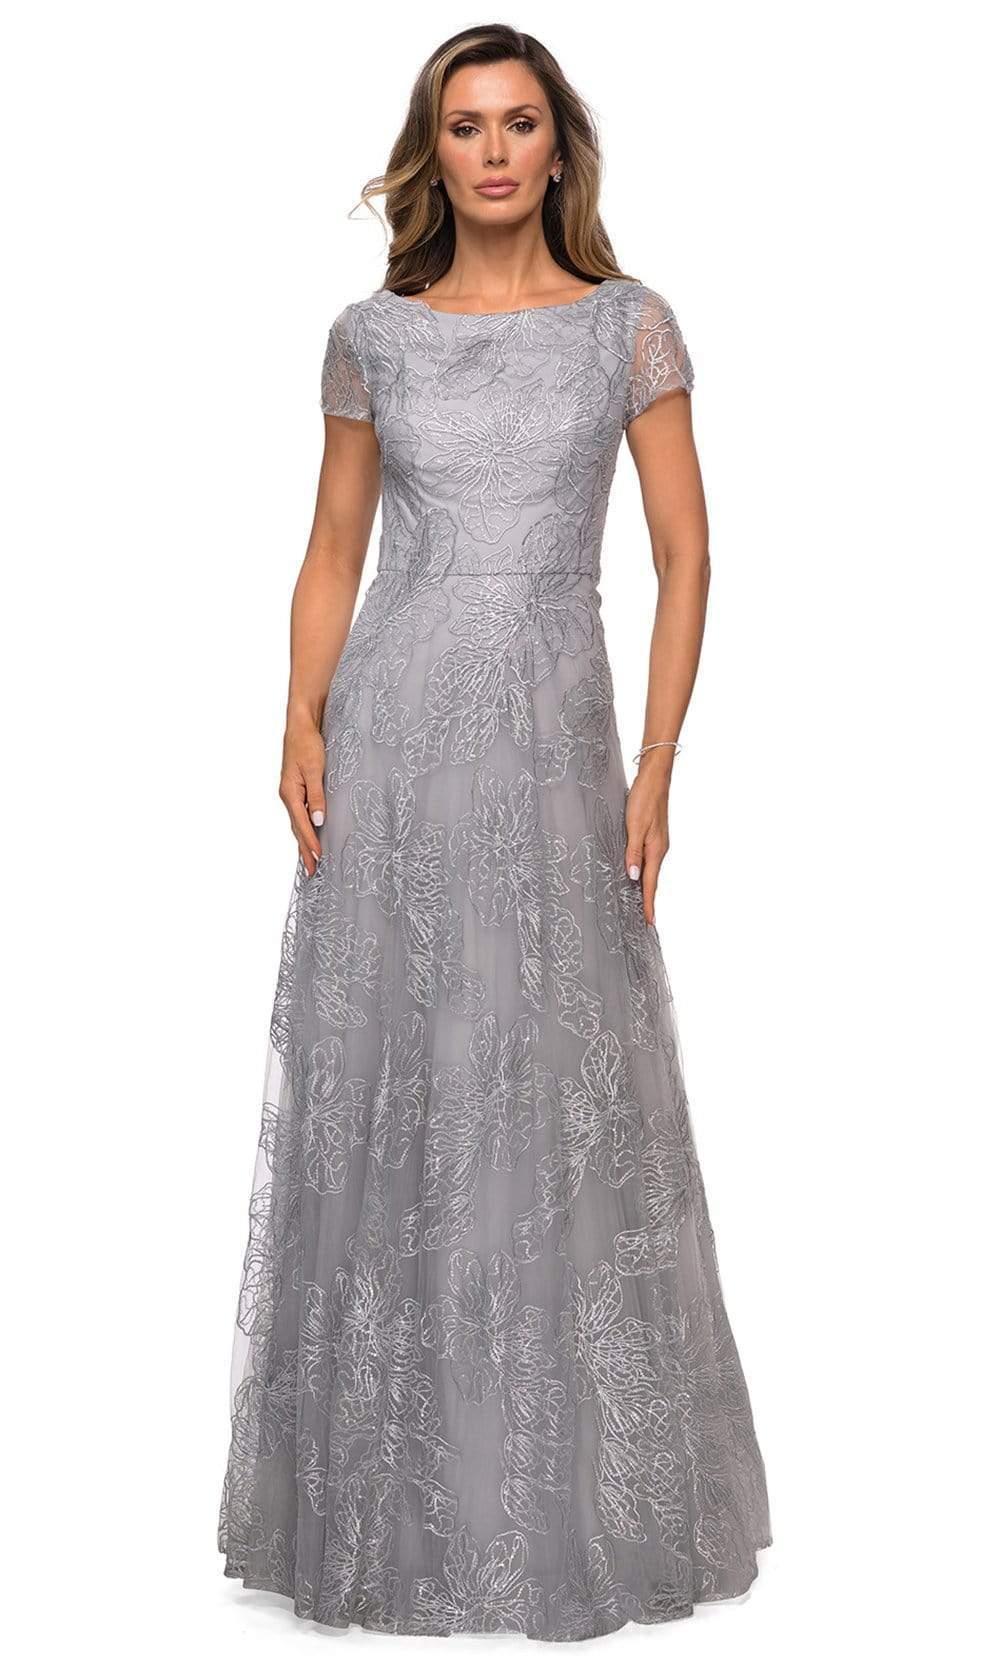 La Femme - 27837 Sequined Lace Bateau A-line Dress
